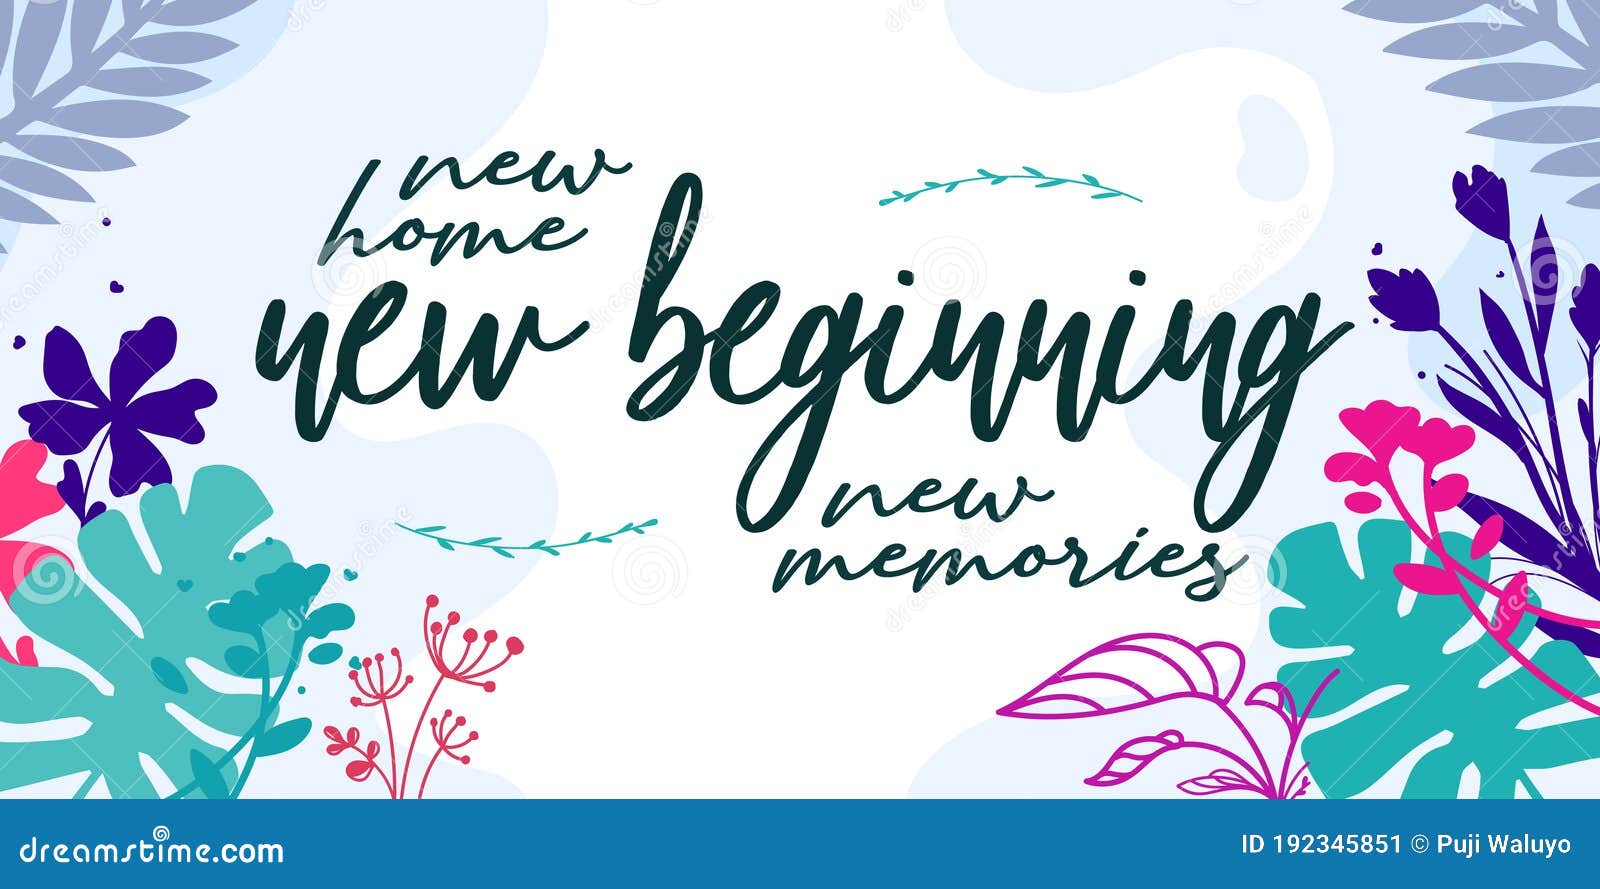 Download New Home New Beginning New Memories Stock Vector ...